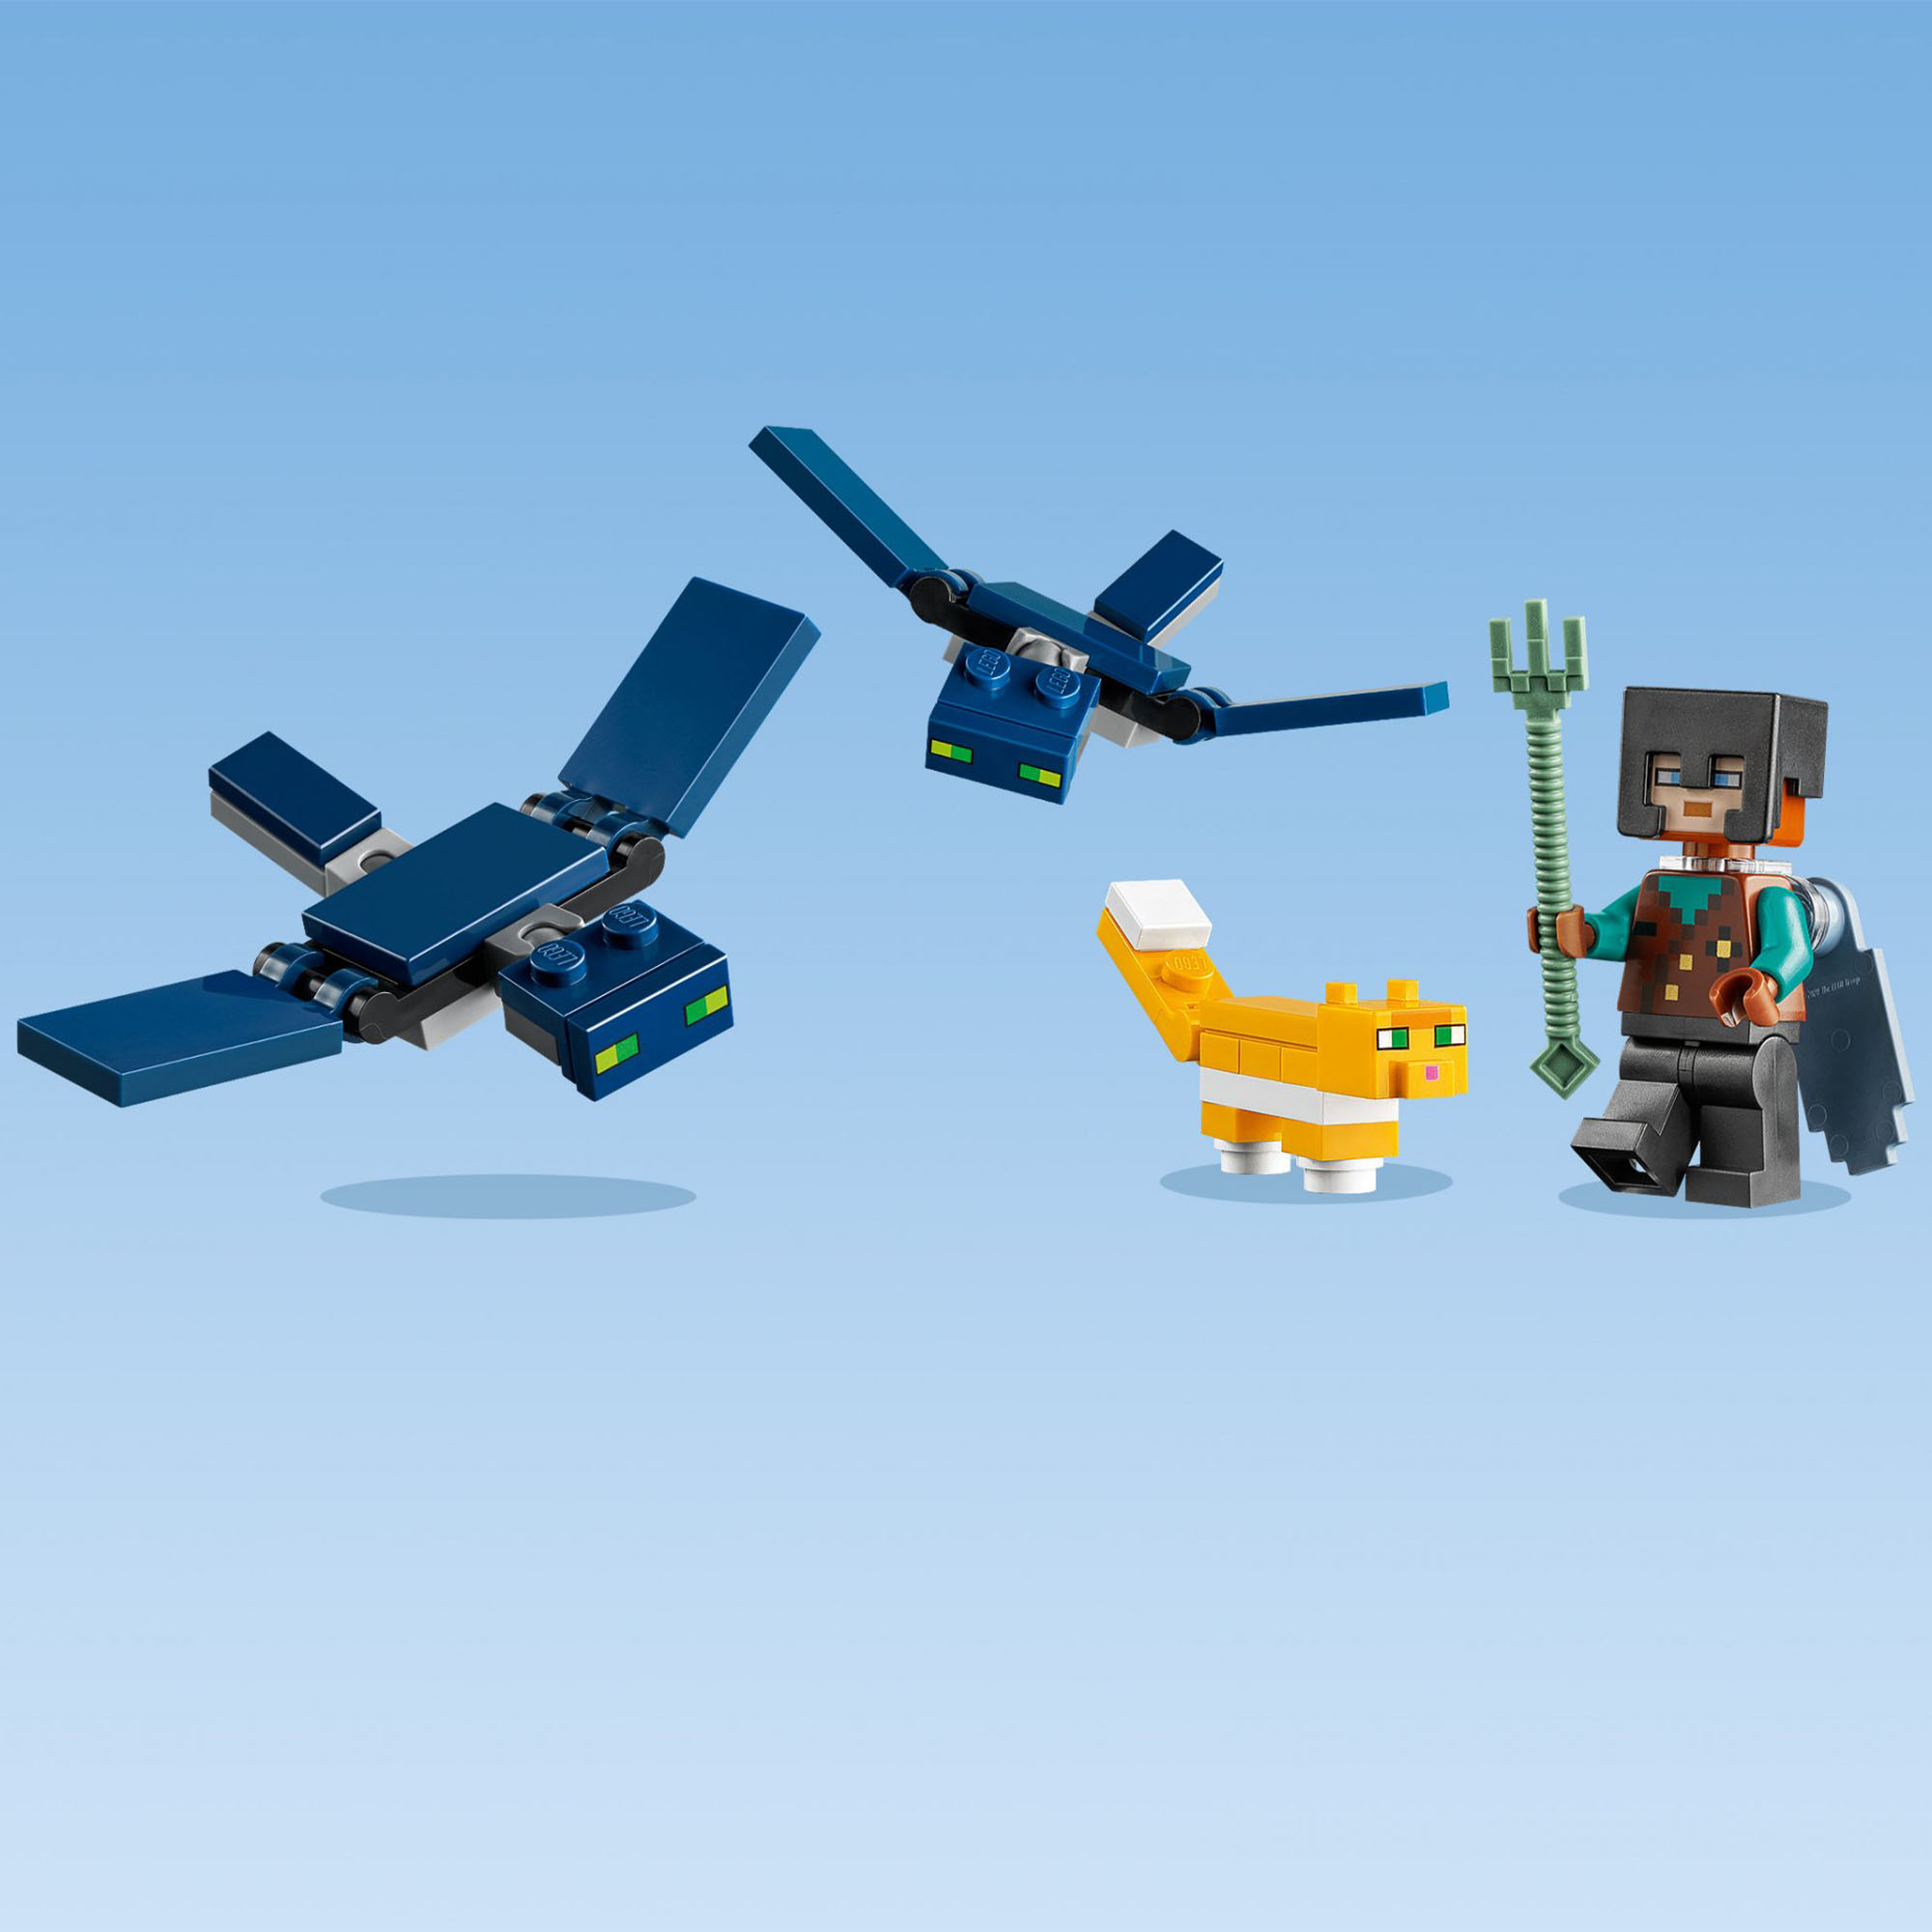 LEGO Minecraft Sky Tower, Set Giocattoli per Bambini di 8 Anni con Minifigure de 21173, , large